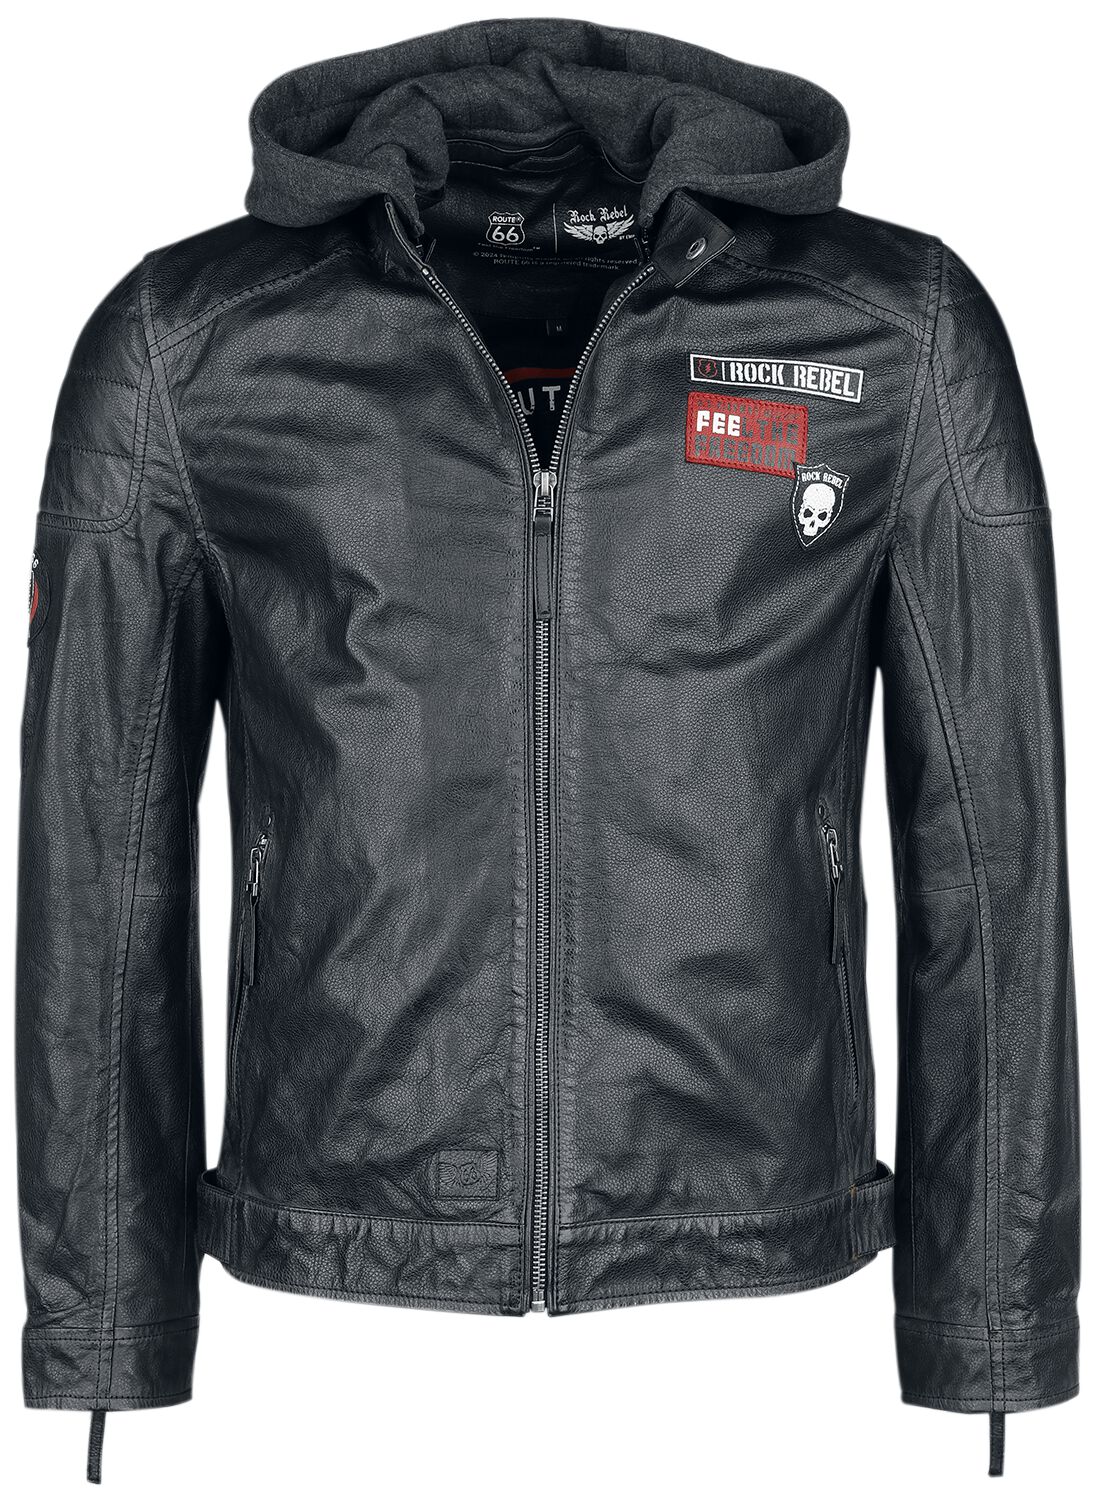 Rock Rebel by EMP - Rock Lederjacke - Rock Rebel X Route 66 - Leather Jacket - S bis XXL - für Männer - Größe XL - schwarz